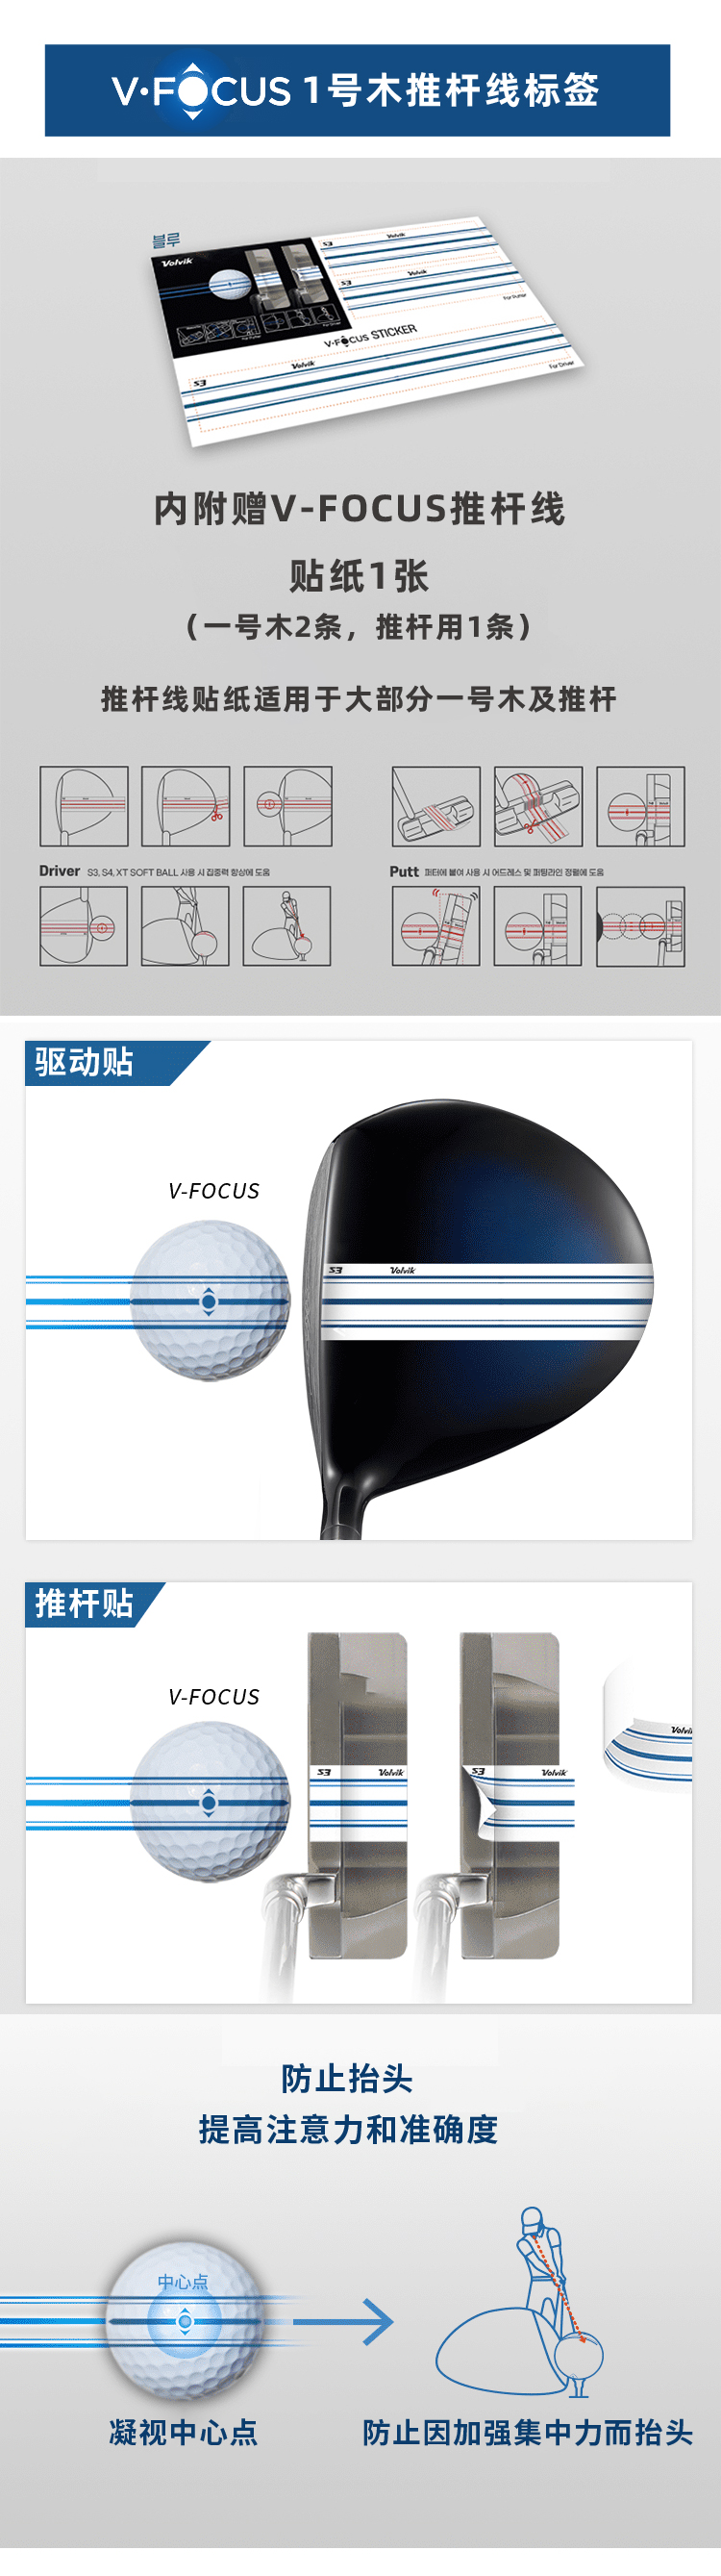 Volvik沃维克S3新款三层高尔夫彩球光面12粒职业定制golf礼盒